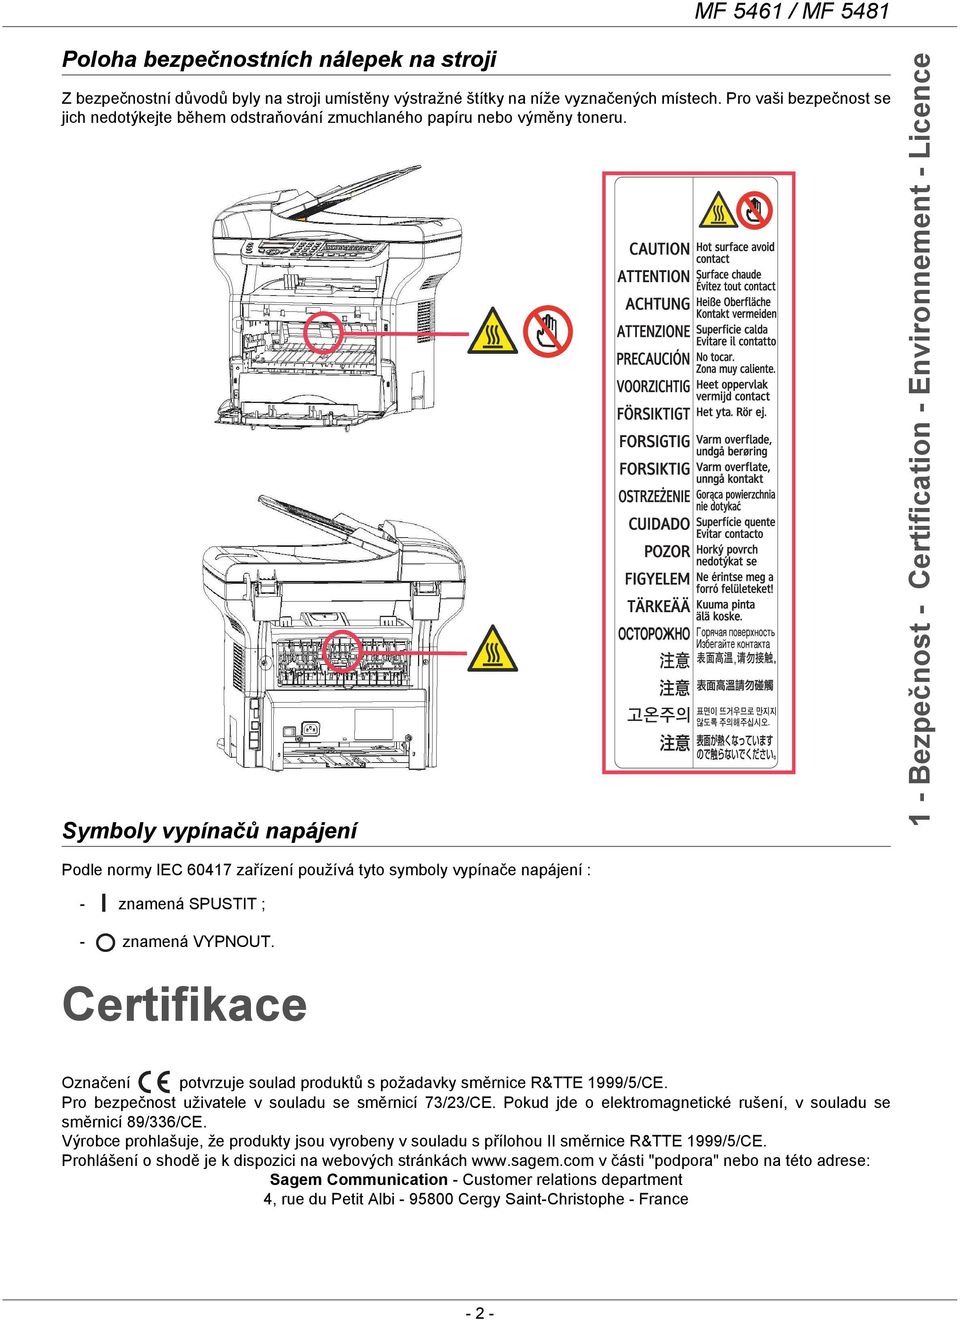 Symboly vypínačů napájení 1 - Bezpečnost - Certification - Environnement - Licence Podle normy IEC 60417 zařízení používá tyto symboly vypínače napájení : - znamená SPUSTIT ; - znamená VYPNOUT.